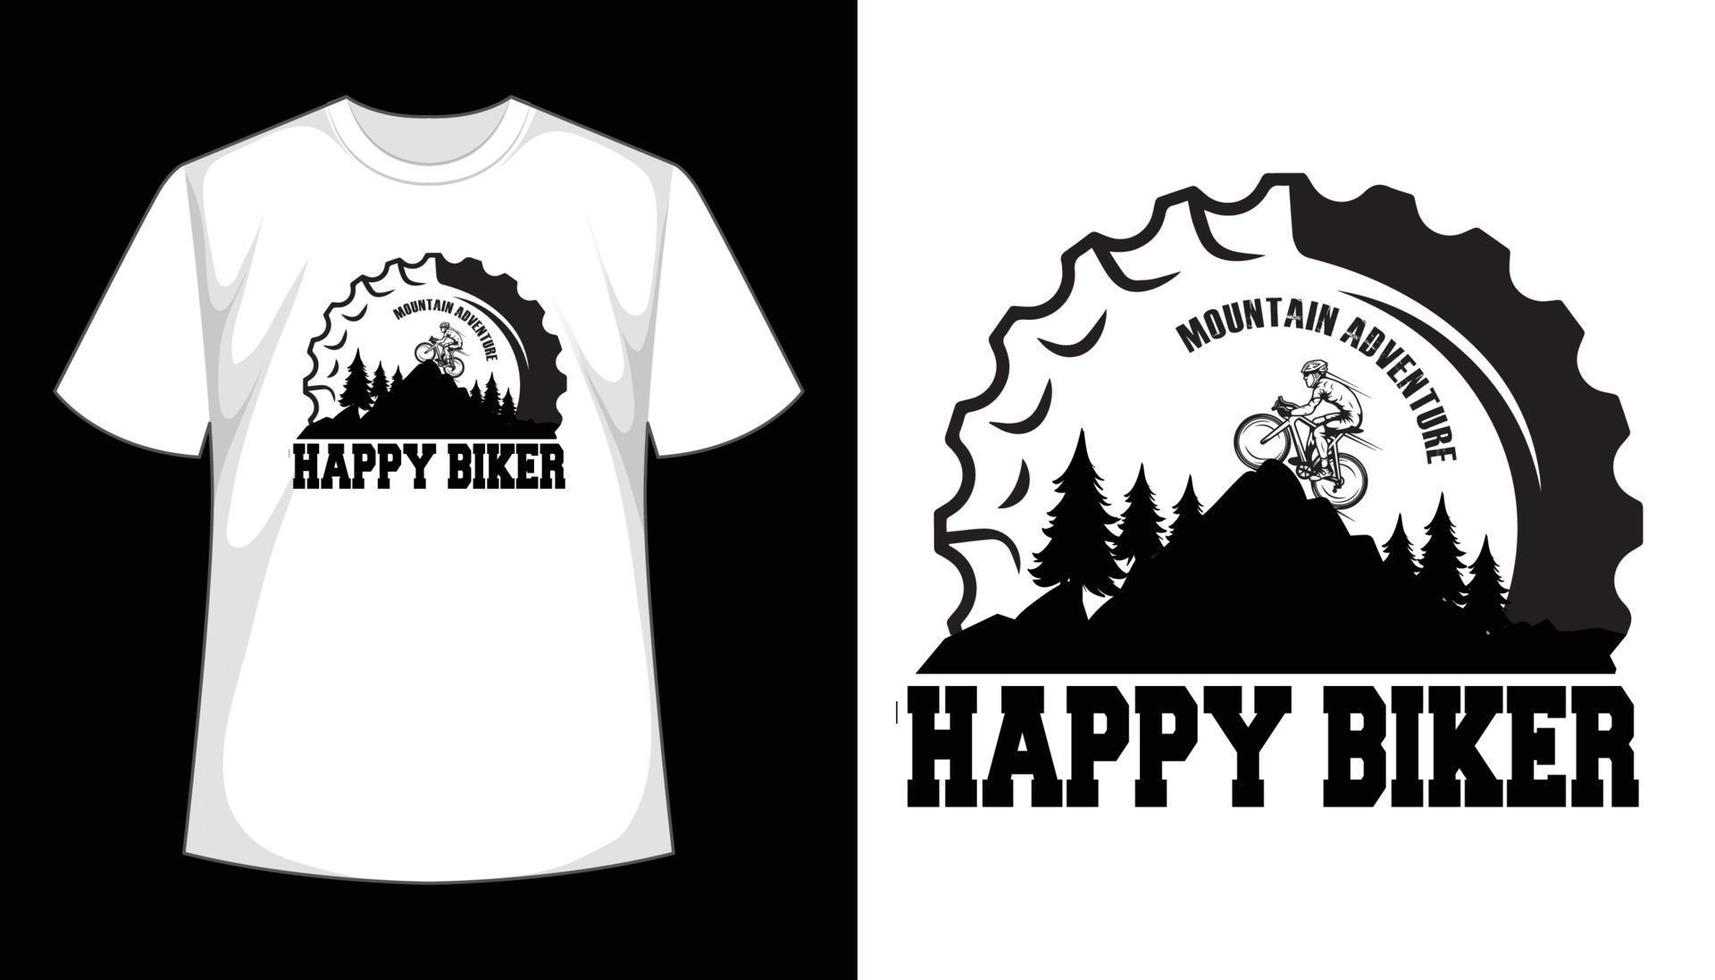 bergabenteuer glückliches biker-t-shirt-design, vintage retro, typografie-t-shirt-vorlage. vektor